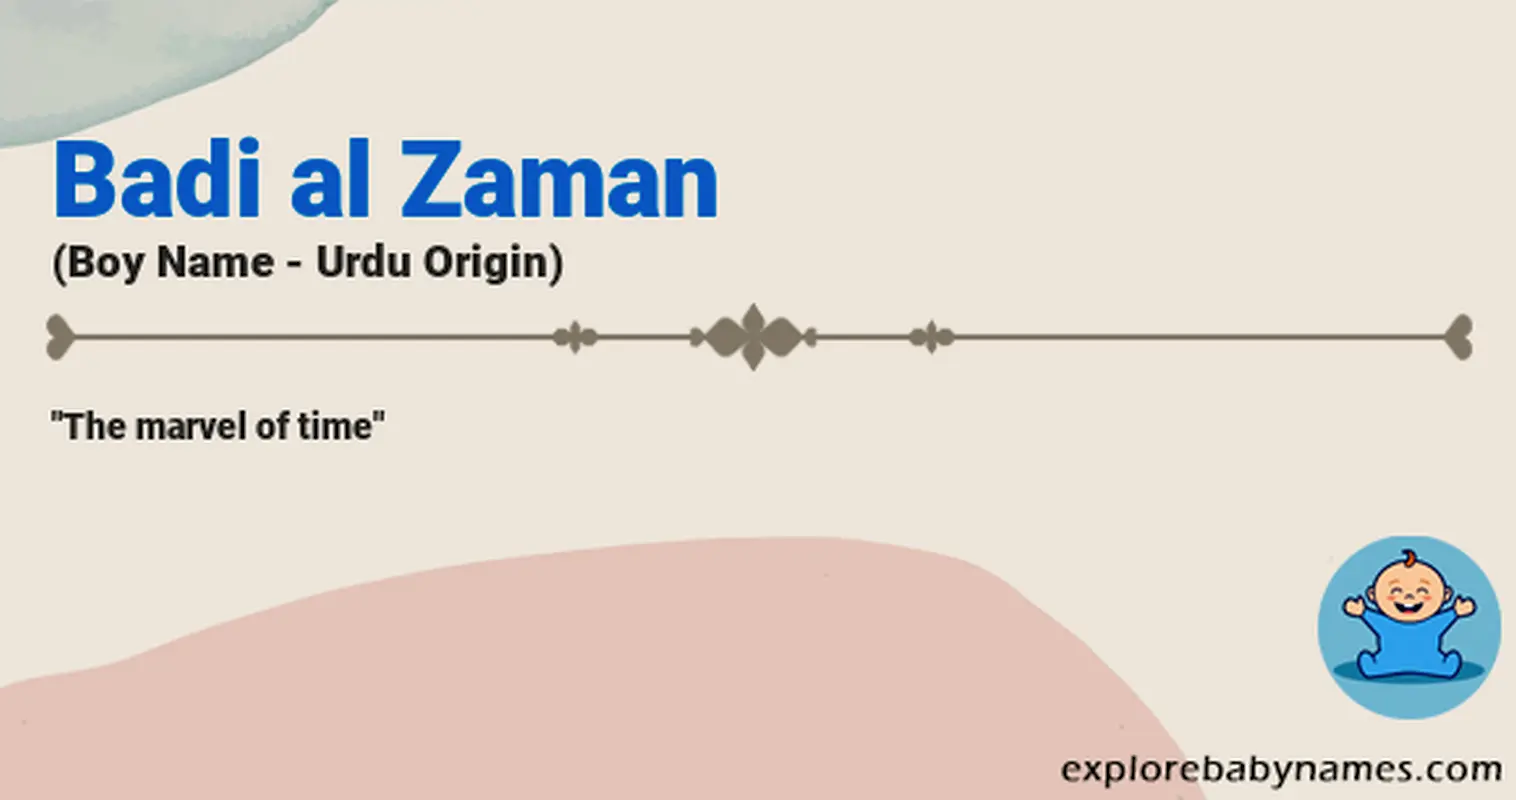 Meaning of Badi al Zaman